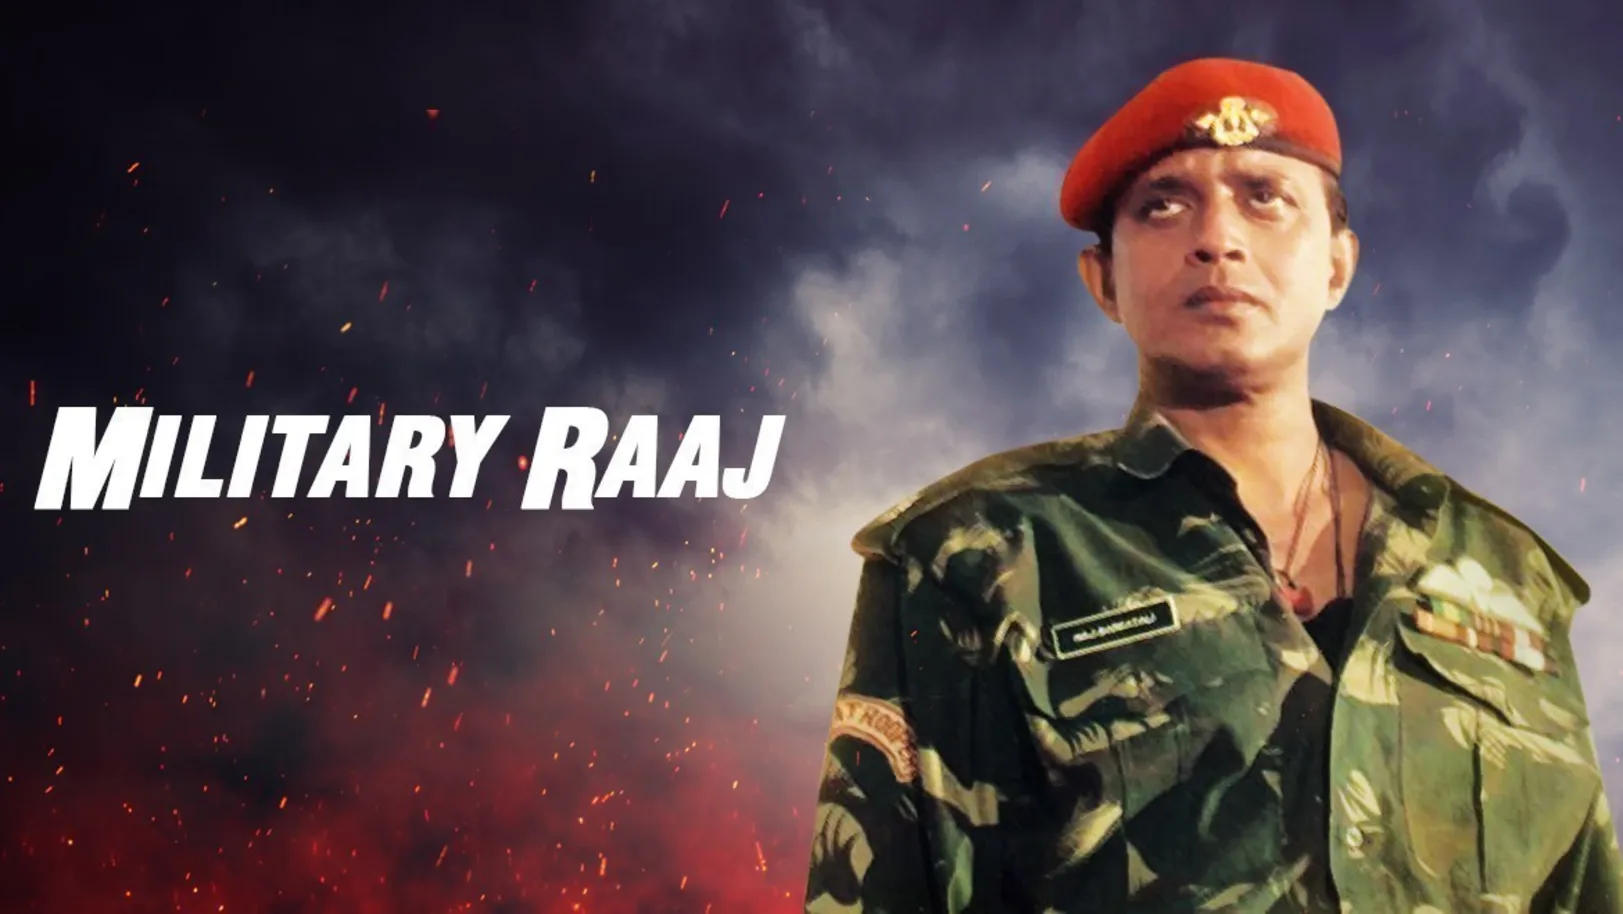 Military Raaj Movie